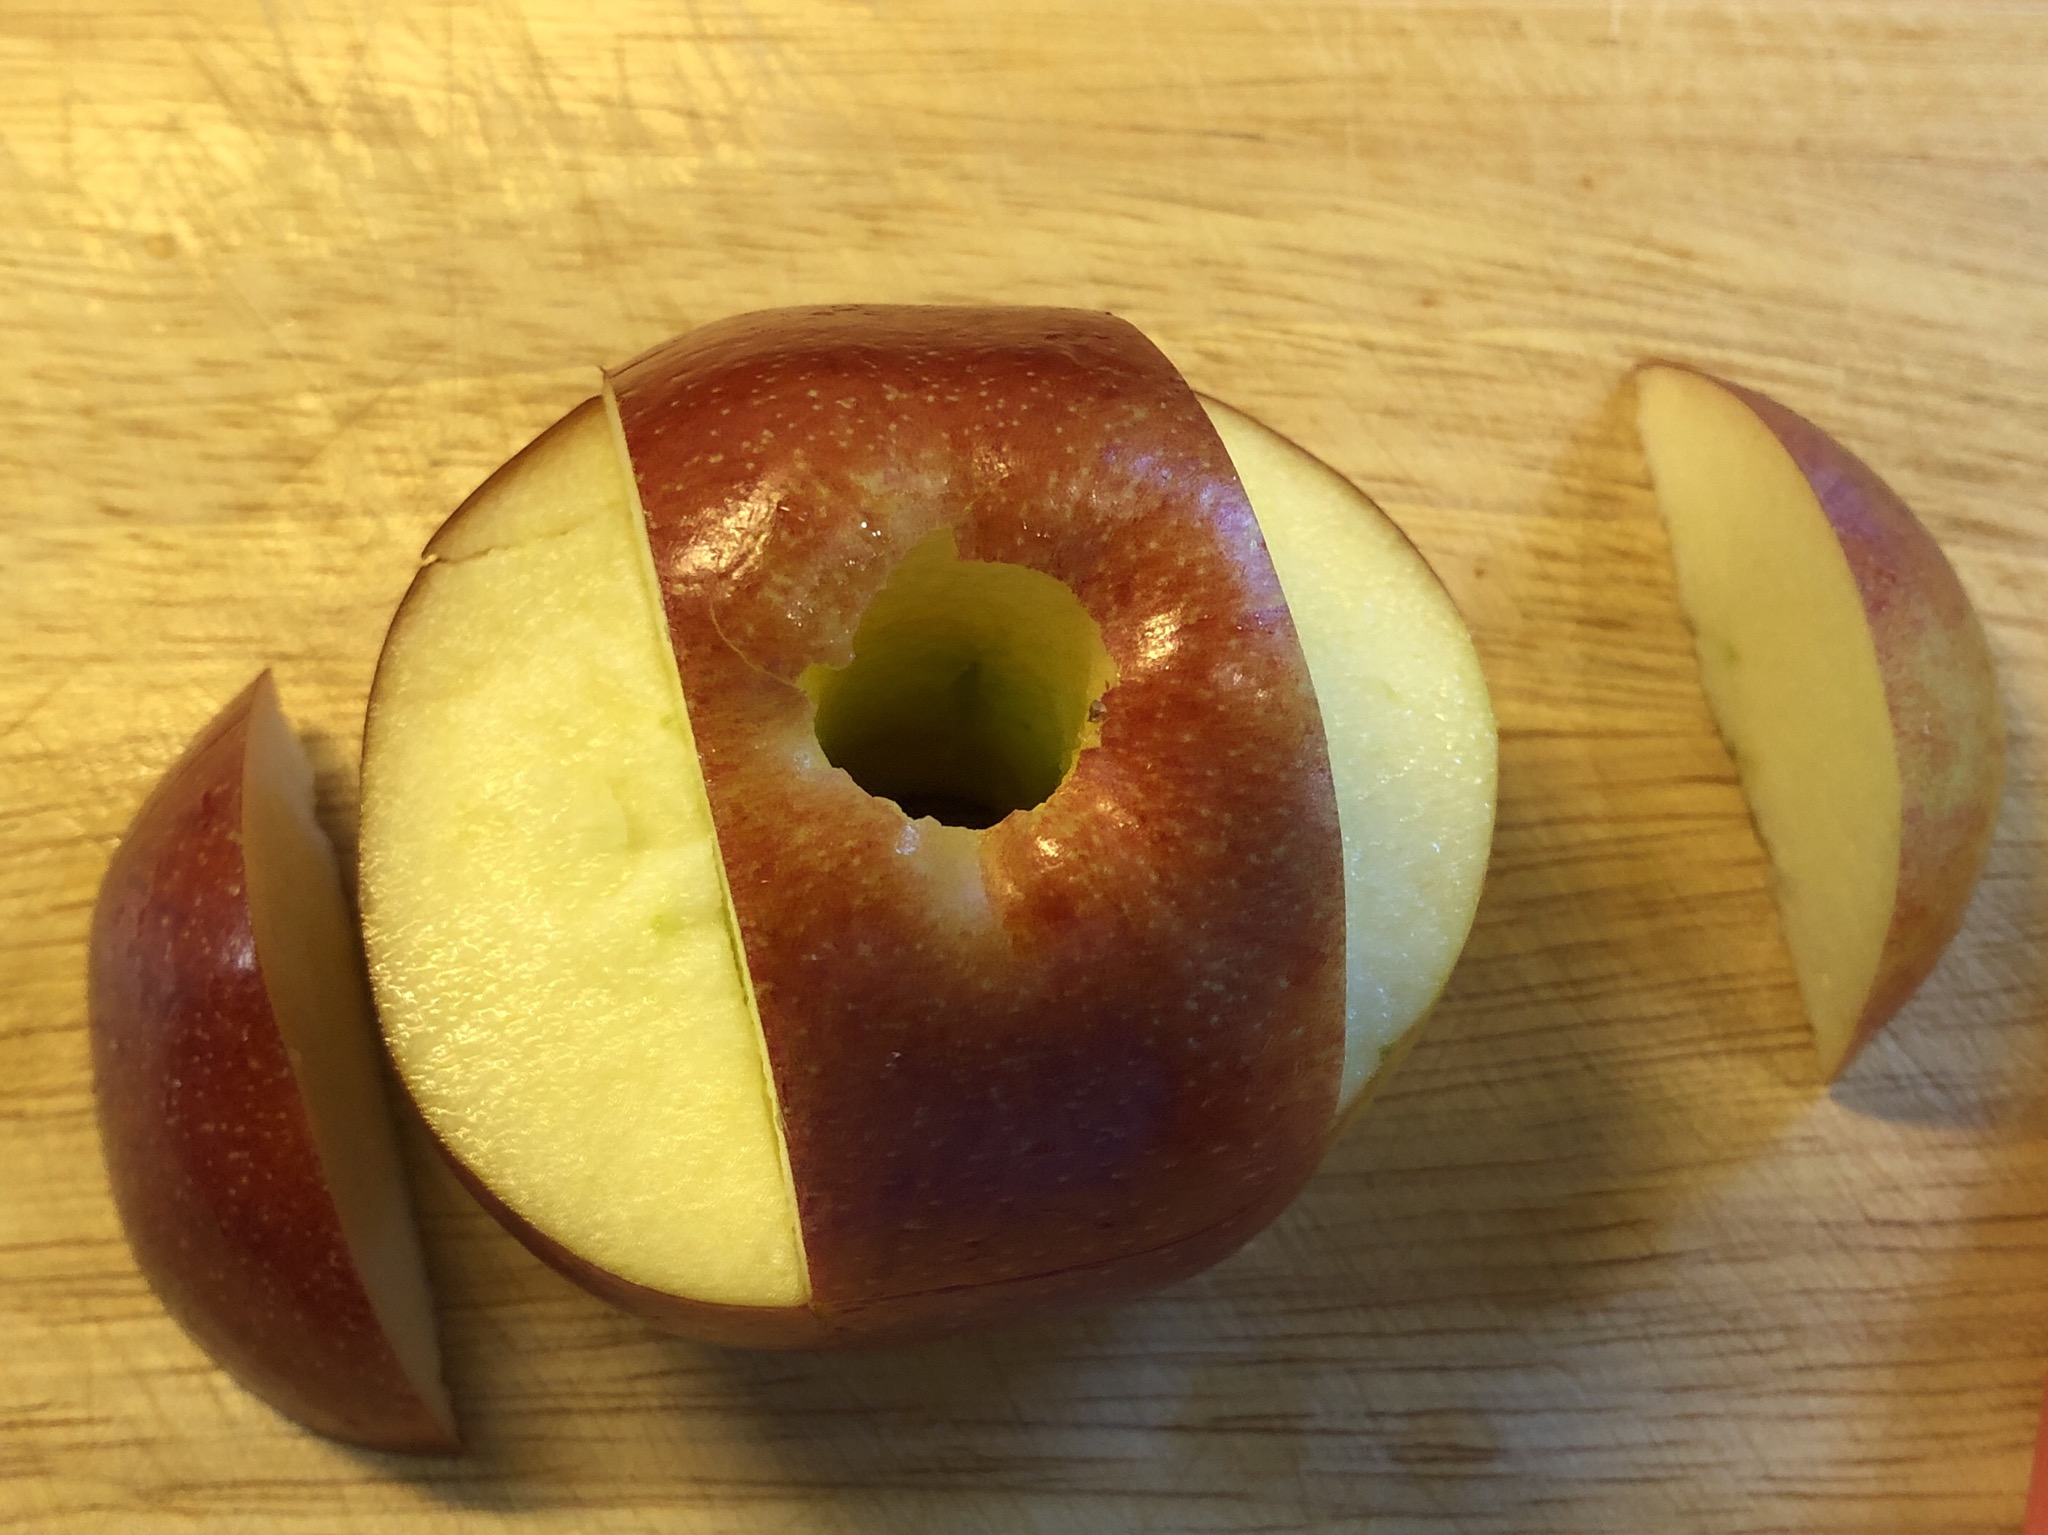 Bild zum Schritt 6 für das Bastel- und DIY-Abenteuer für Kinder: 'So sieht der Apfel dann aus! Die beiden seitlichen Apfelstücke...'